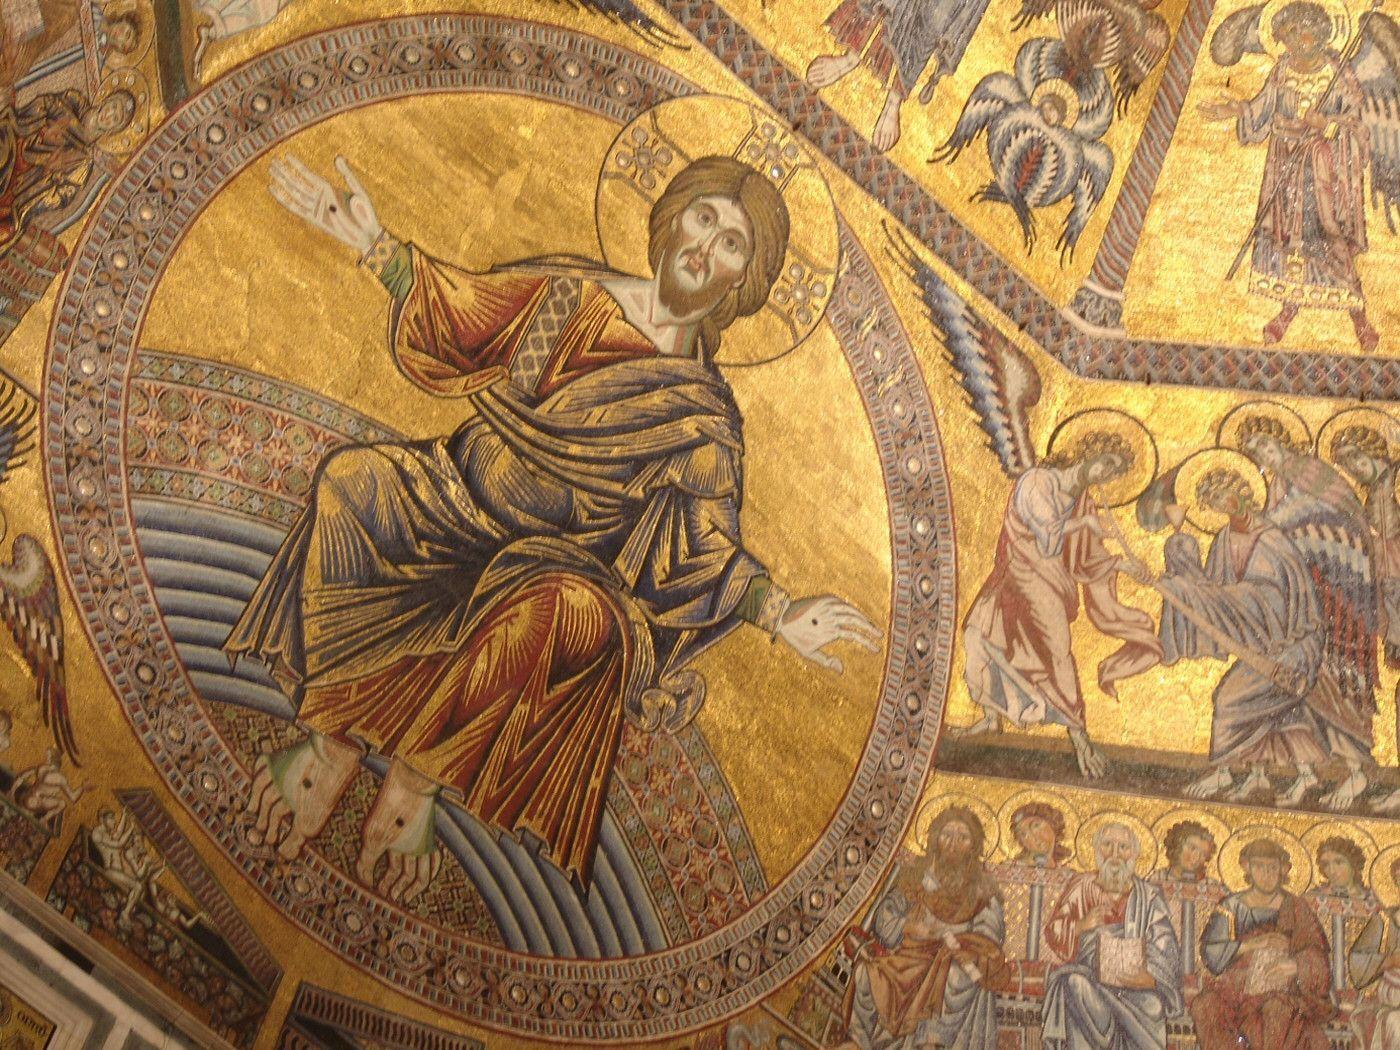 American Papist: Not Your Average Catholic!: Florence&;s mosaic